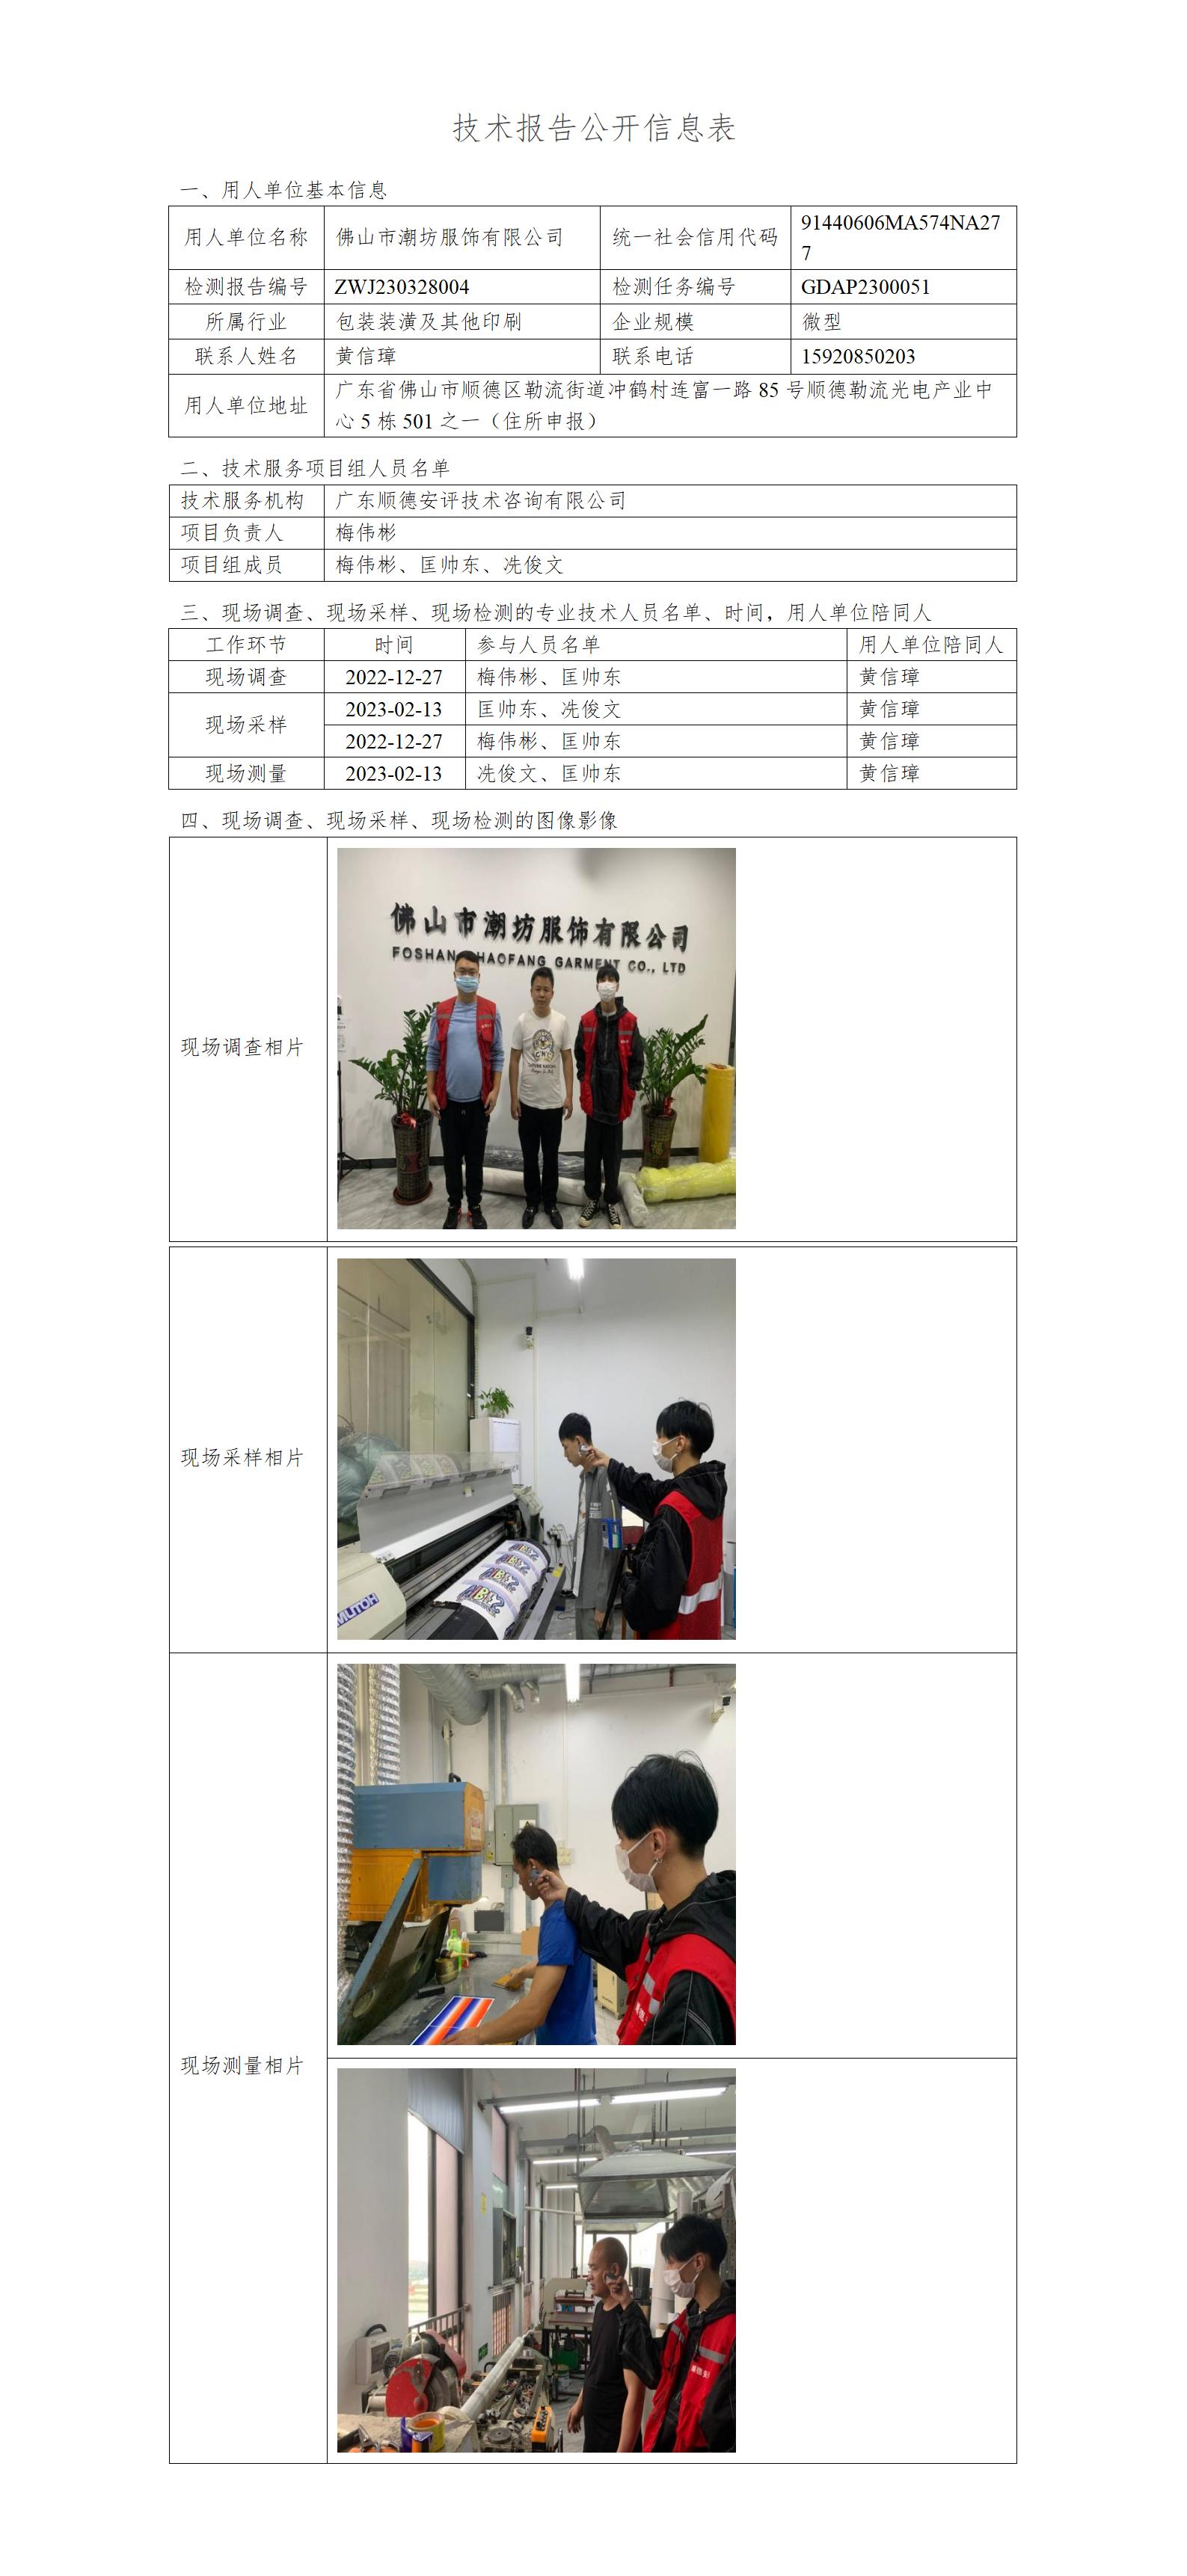 佛山市潮坊服饰有限公司-2023-技术报告公开信息表_01.jpg